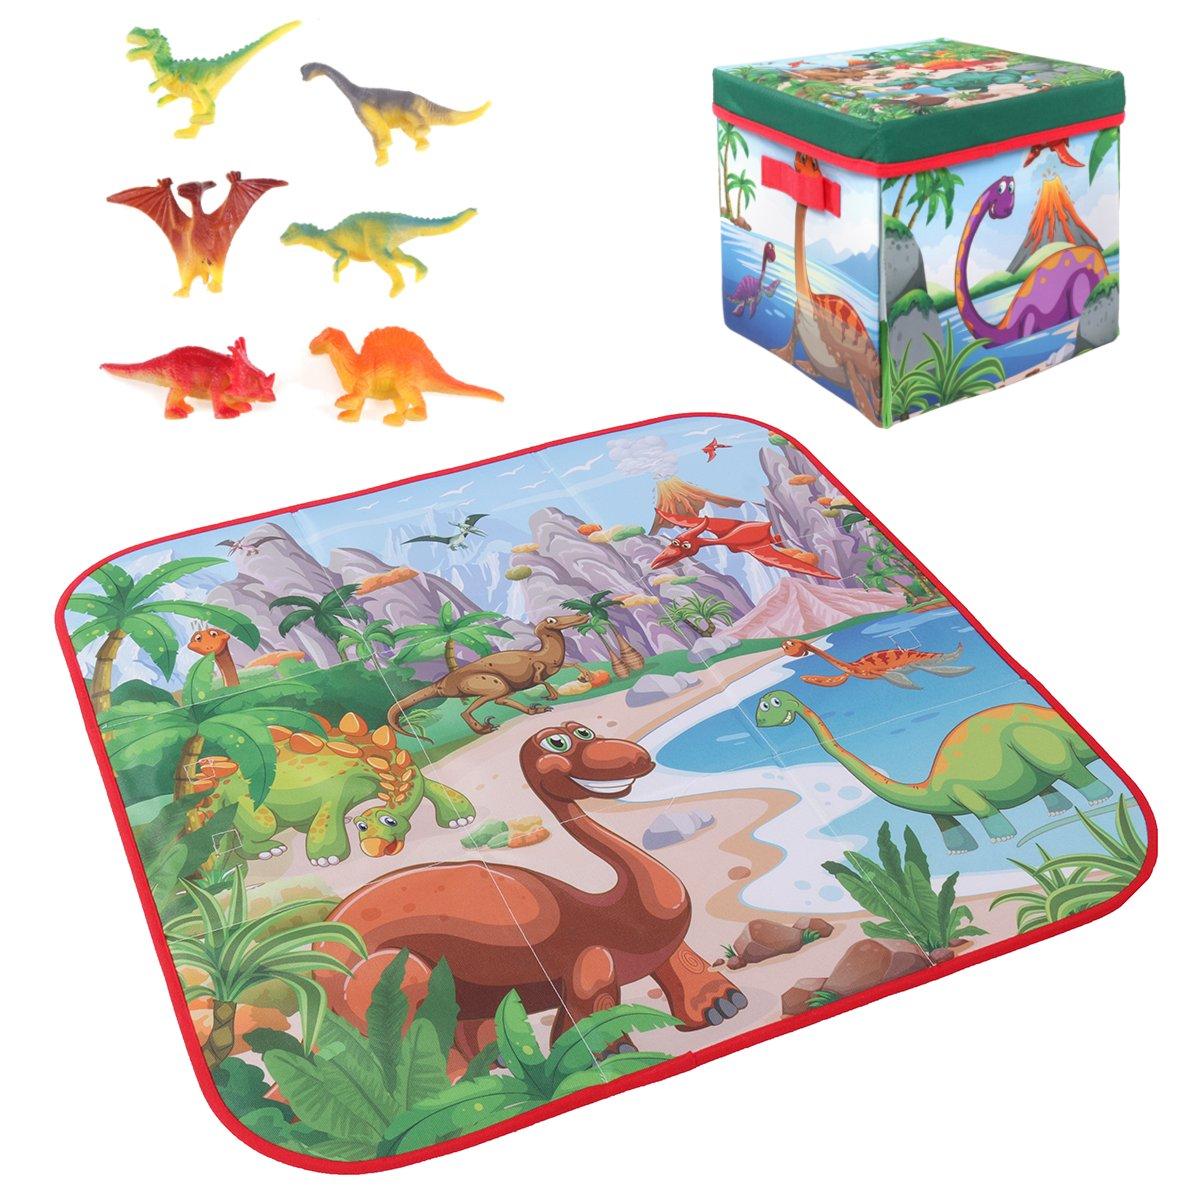 72x72cm Dziecięcy dywanik do zabawy z kreskówkami + 6 zabawek dinozaurów, kwadratowa składana skrzynka na kemping i piknik, dywanik do pełzania dla dziecka.